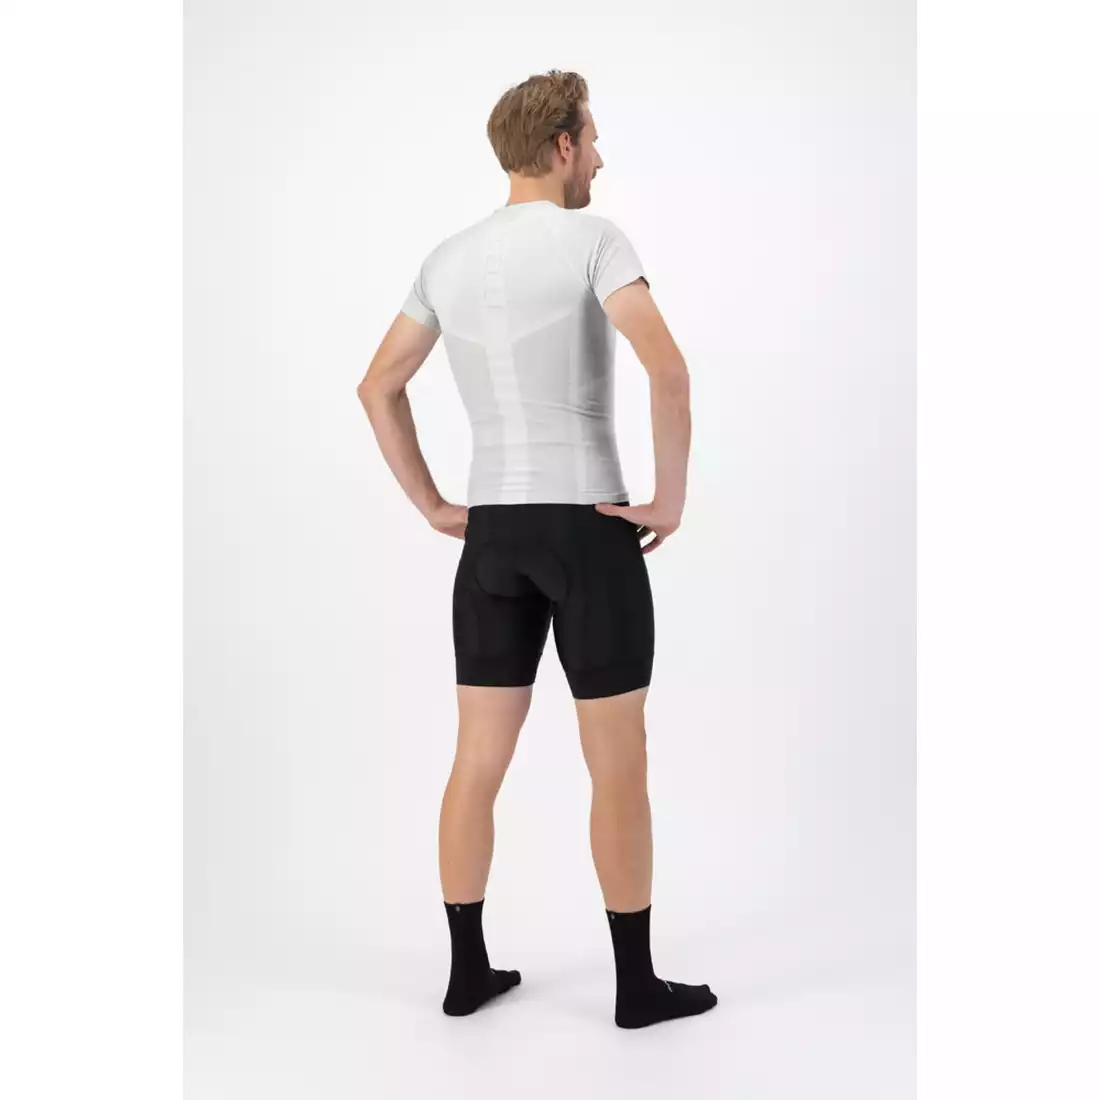 ROGELLI ESSENTIAL Pantaloni scurți pentru ciclism bărbați, negri